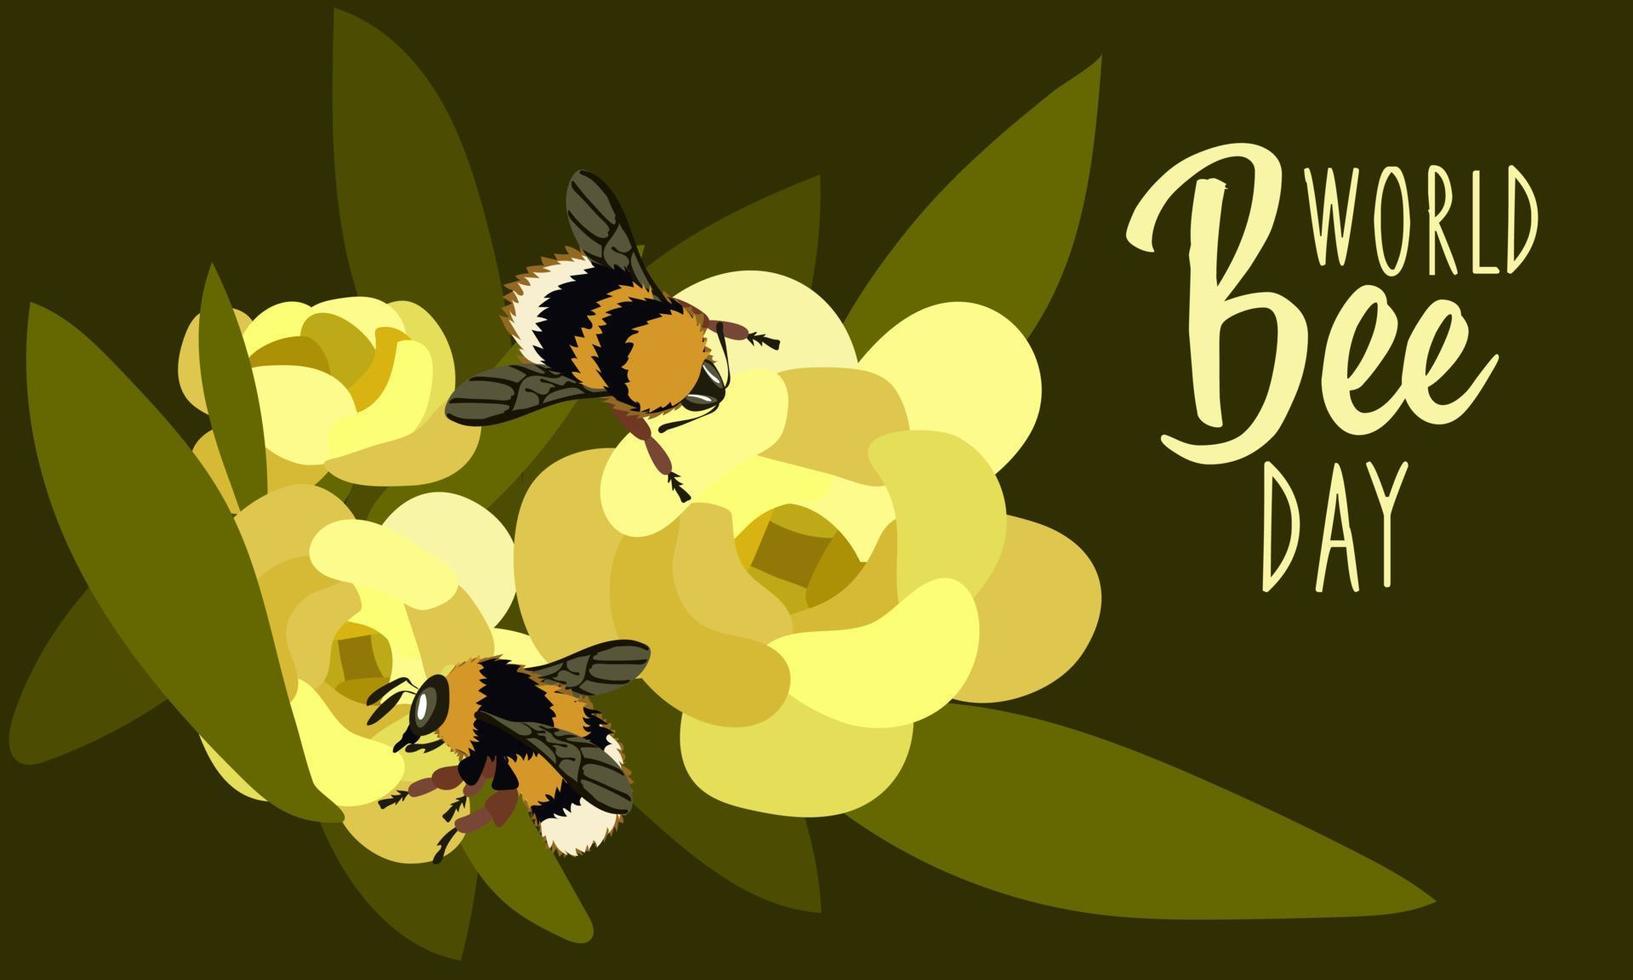 un bandera para el mundo abeja día con linda realista abejas gateando en flores sencillo vector modelo para bandera, póster, volantes, pegatinas, postales linda mullido abeja en un flor